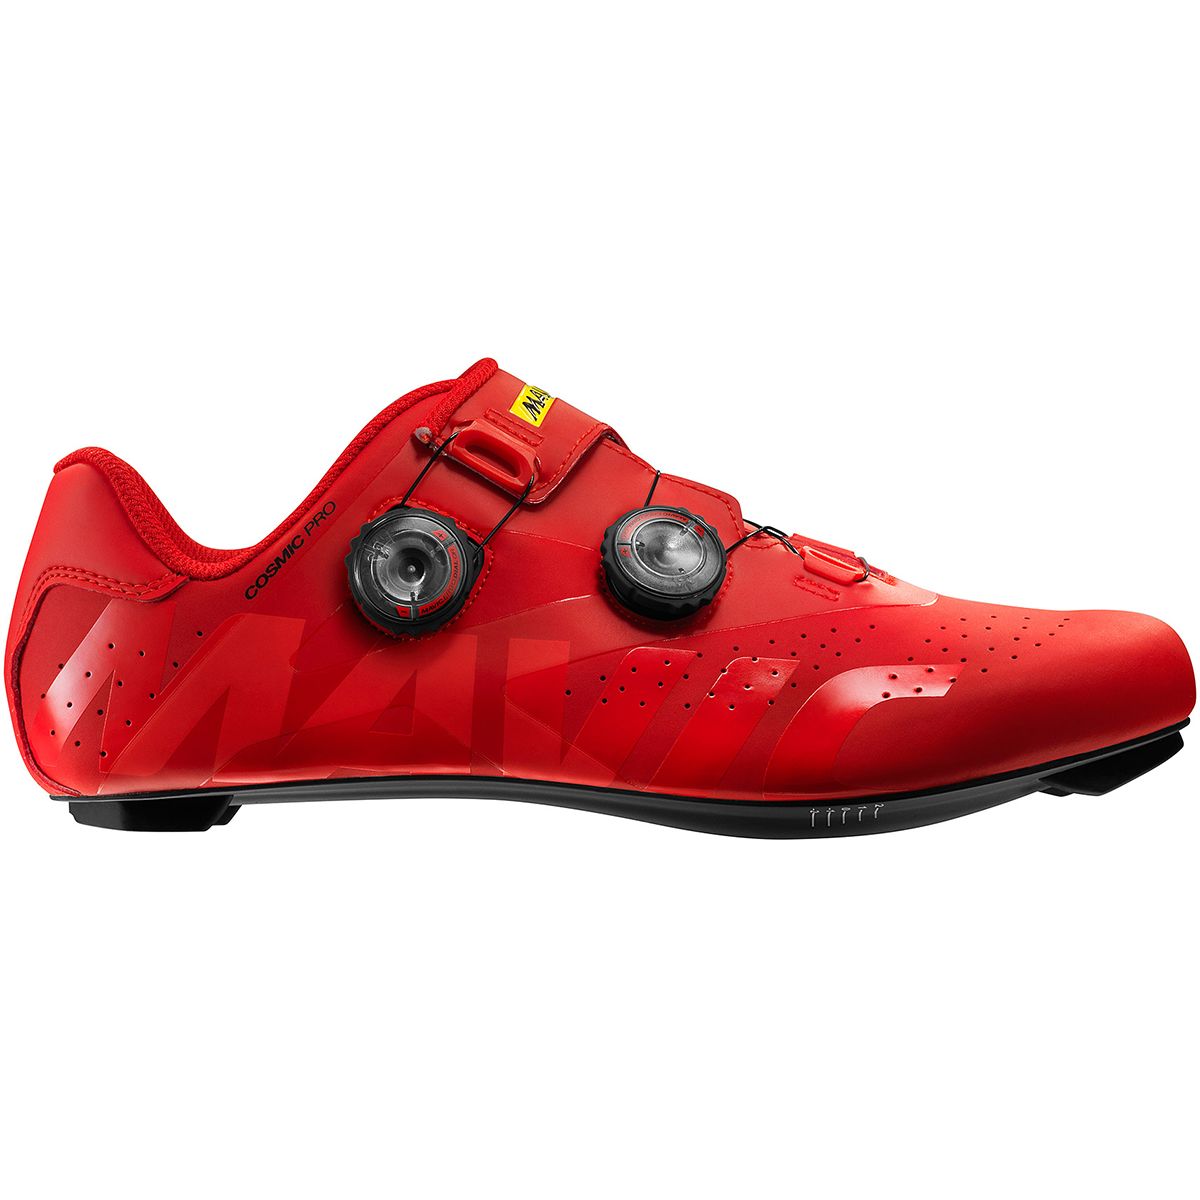 Mavic Cosmic Pro Cycling Shoe - Men's